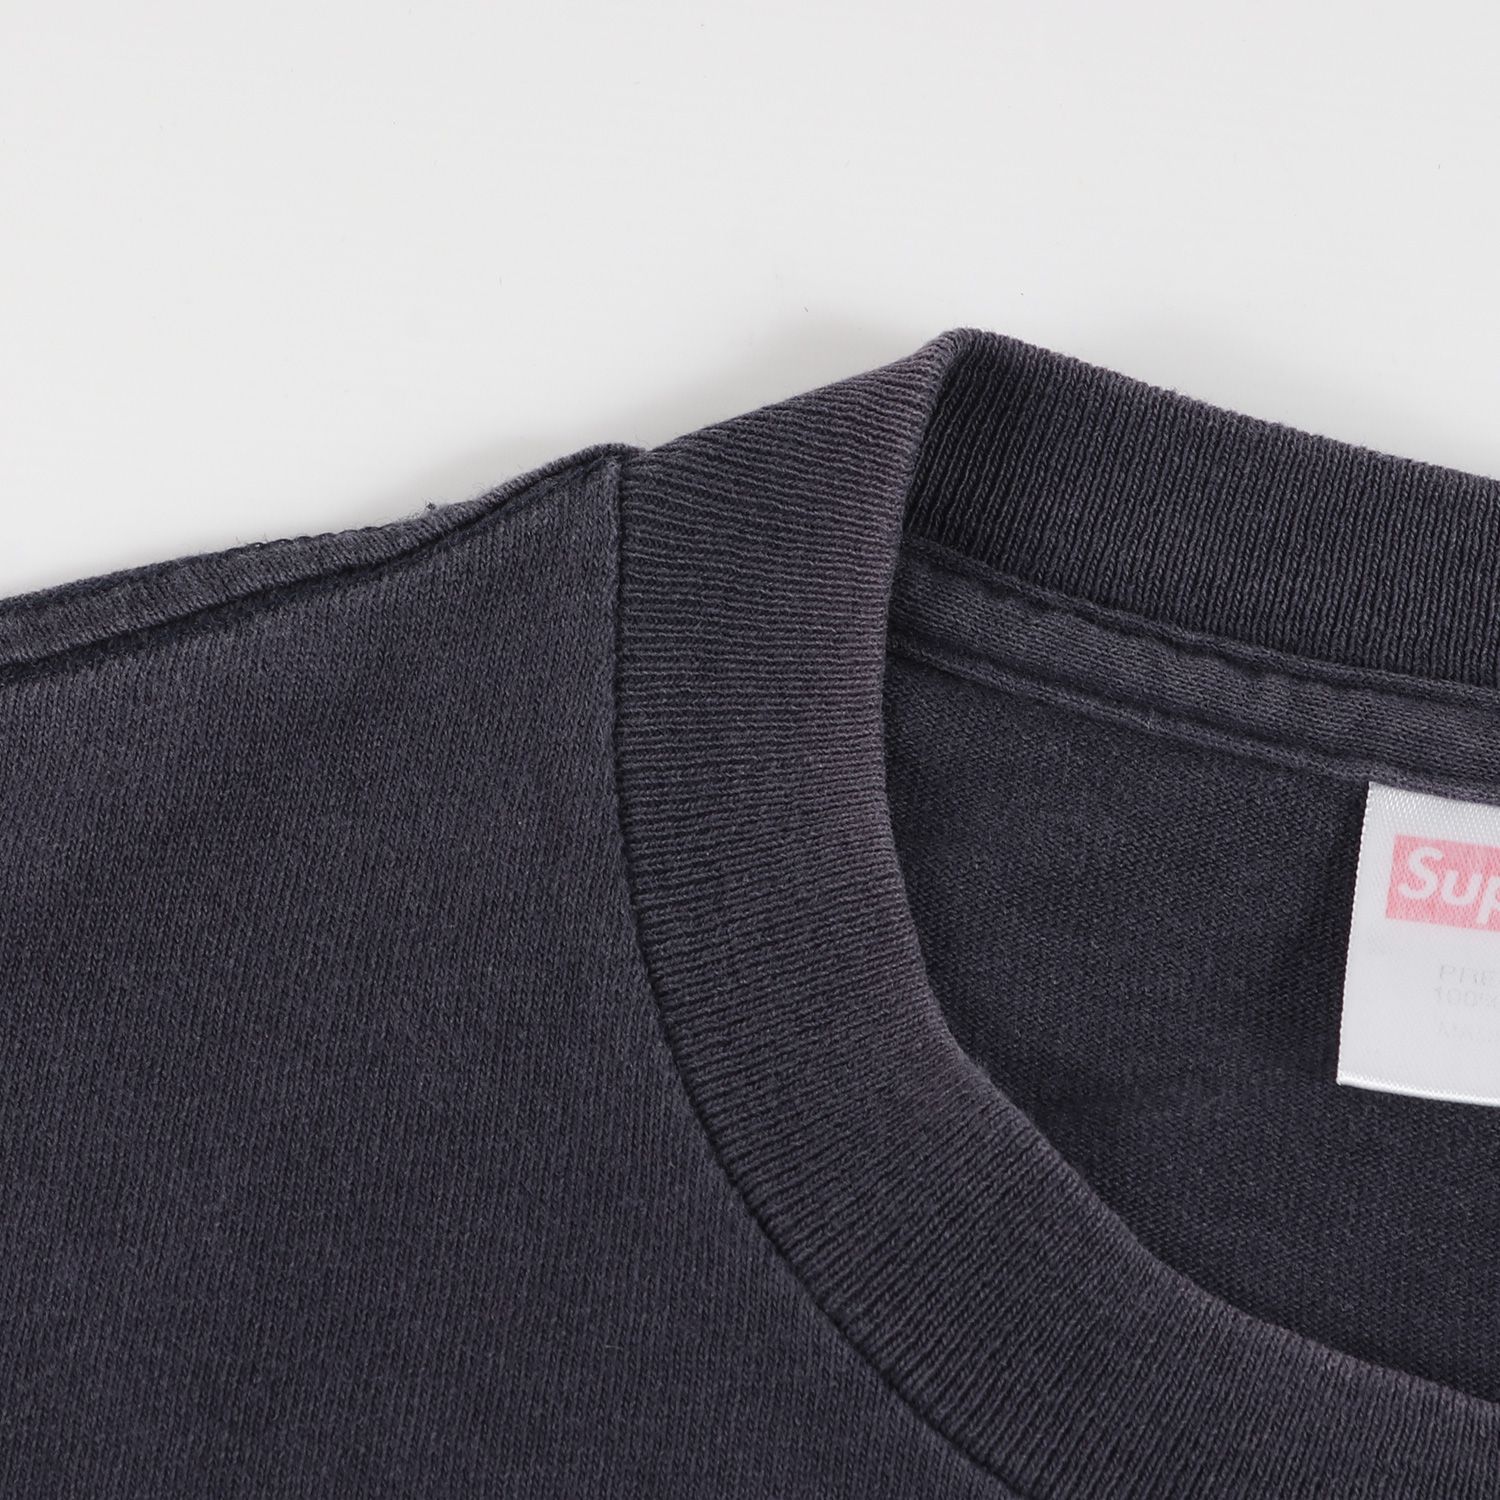 Supreme シュプリーム Tシャツ サイズ:M 初期モデル ボックスロゴ クルーネック 半袖 Tシャツ Box Logo Tee 00s ネイビー 紺 トップス カットソー 【メンズ】